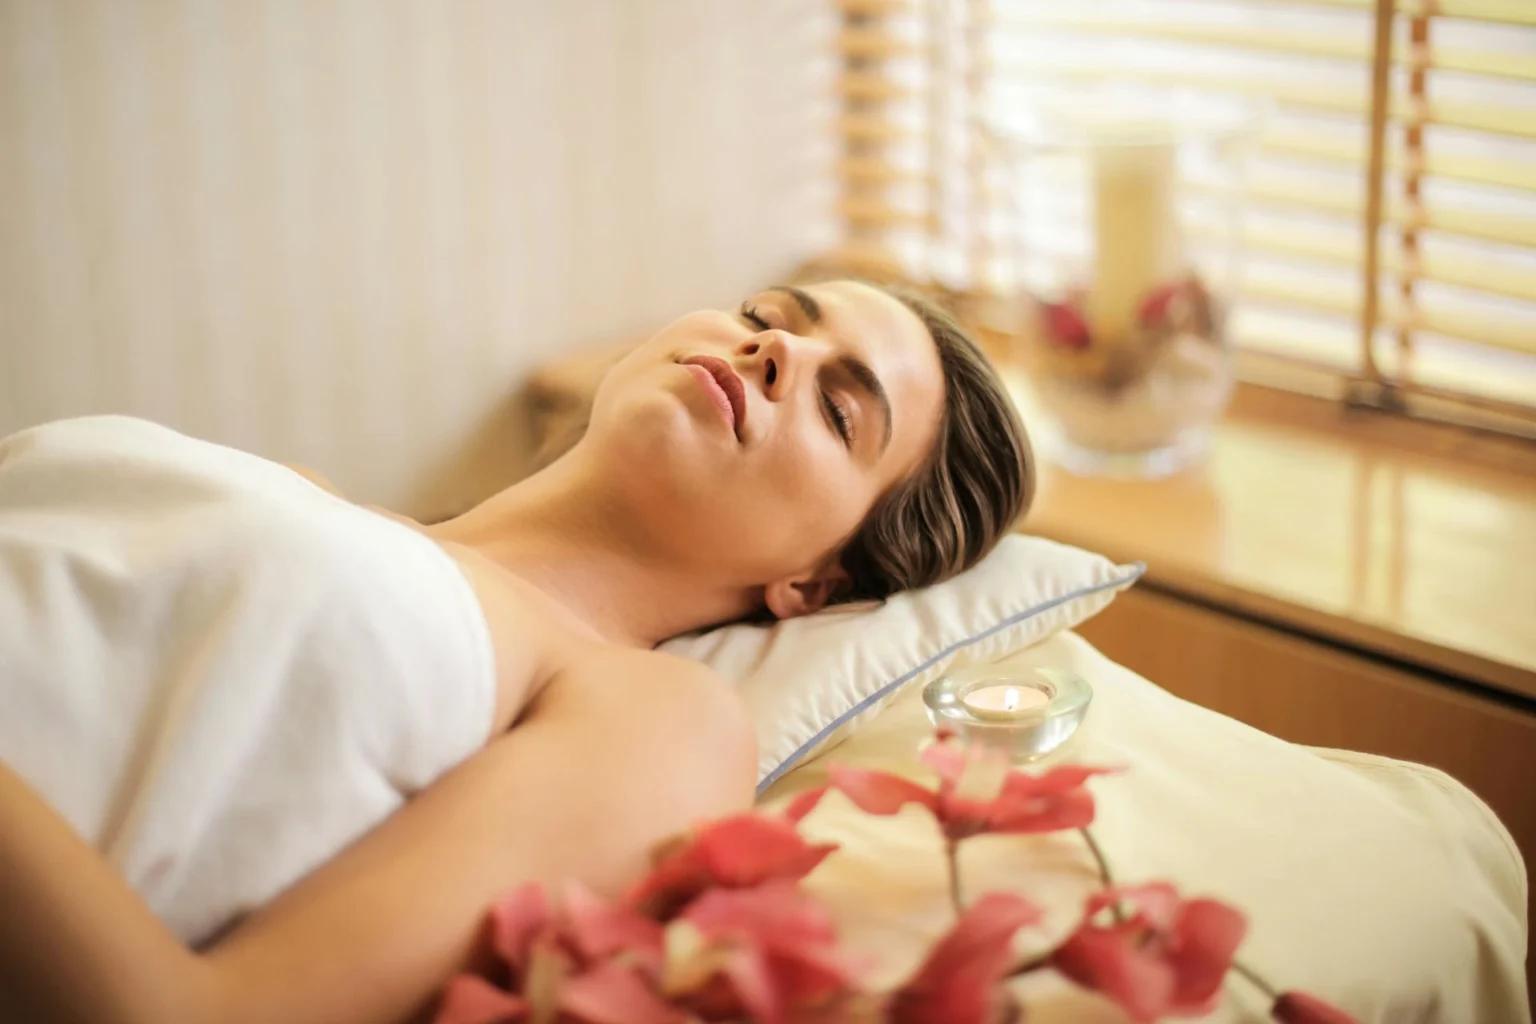 Nell'immagine si vede una ragazza sdraiata coperta di un asciugamano bianco su un lettino da massaggio che si rilassa con gli occhi chiusi. Accanto a lei c'è una piccola candela.